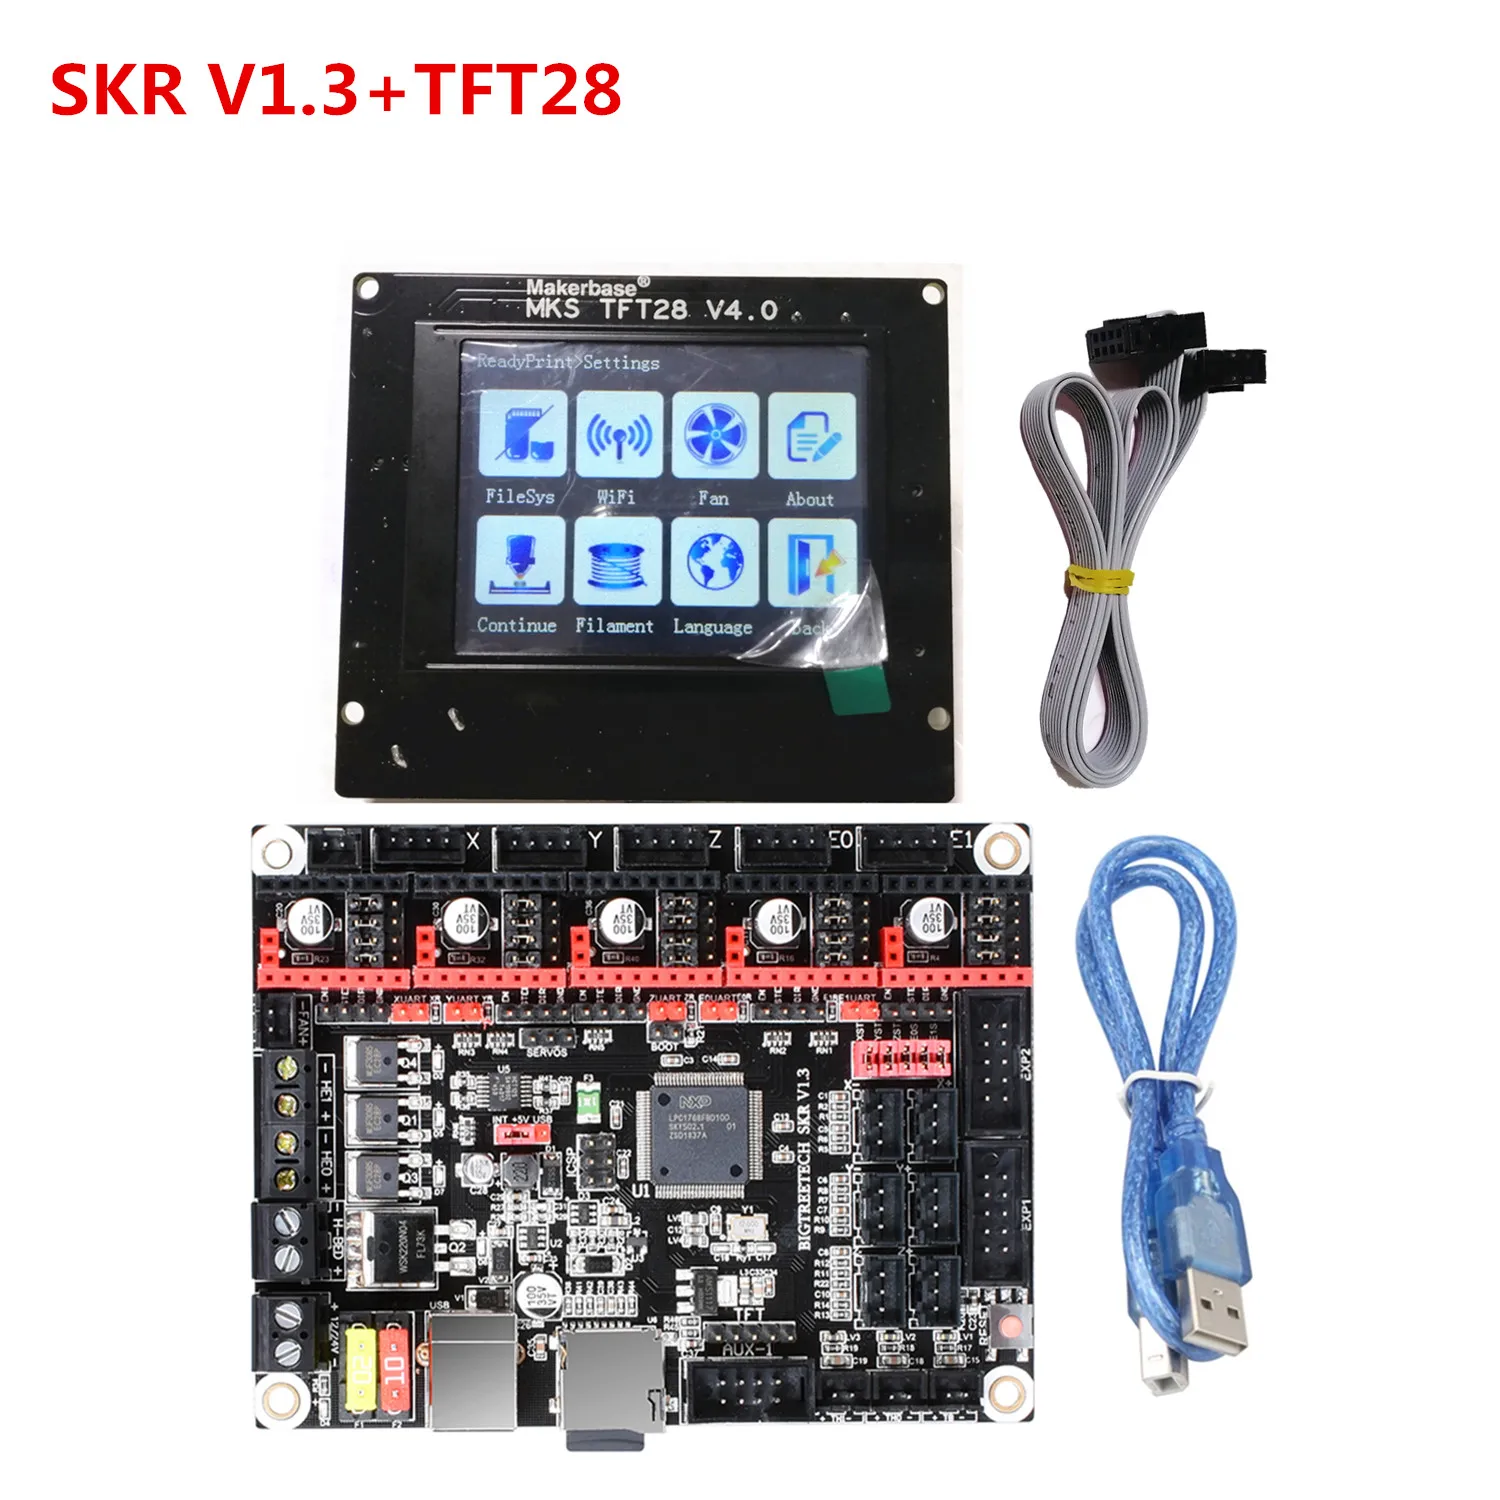 Обновленная пластина для 3D-принтера SKR V1.3 монитор+ MKS TFT 28 V4.0 сенсорный дисплей+ Wi-Fi контроллер запасной блок для 3D-принтера контроллер